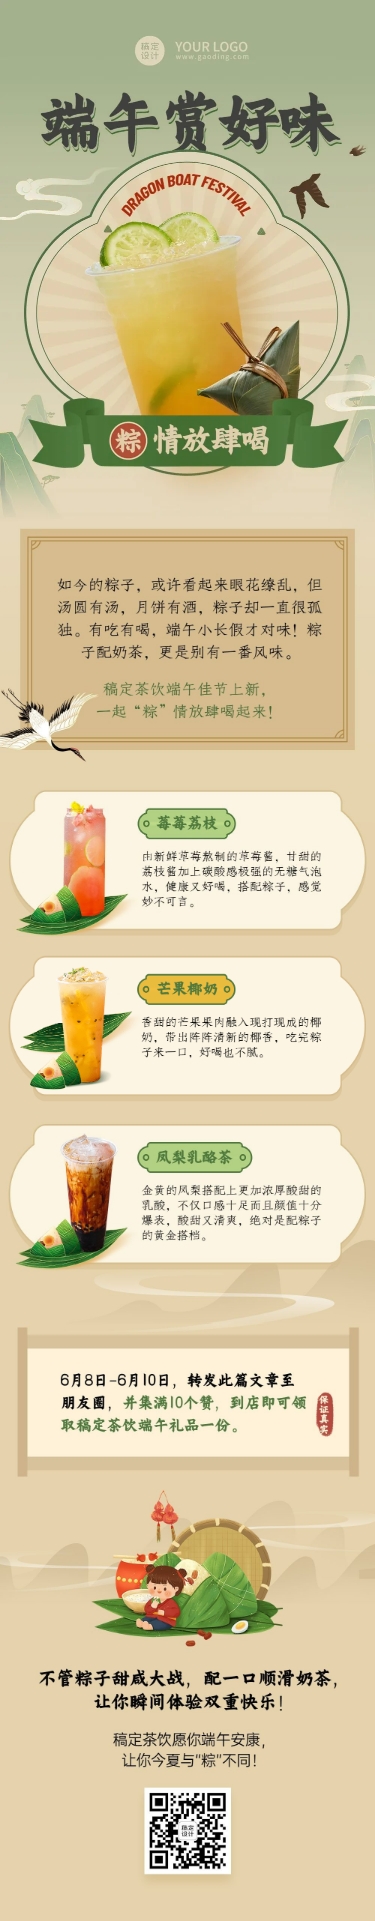 端午节餐饮奶茶饮品产品营销文章长图